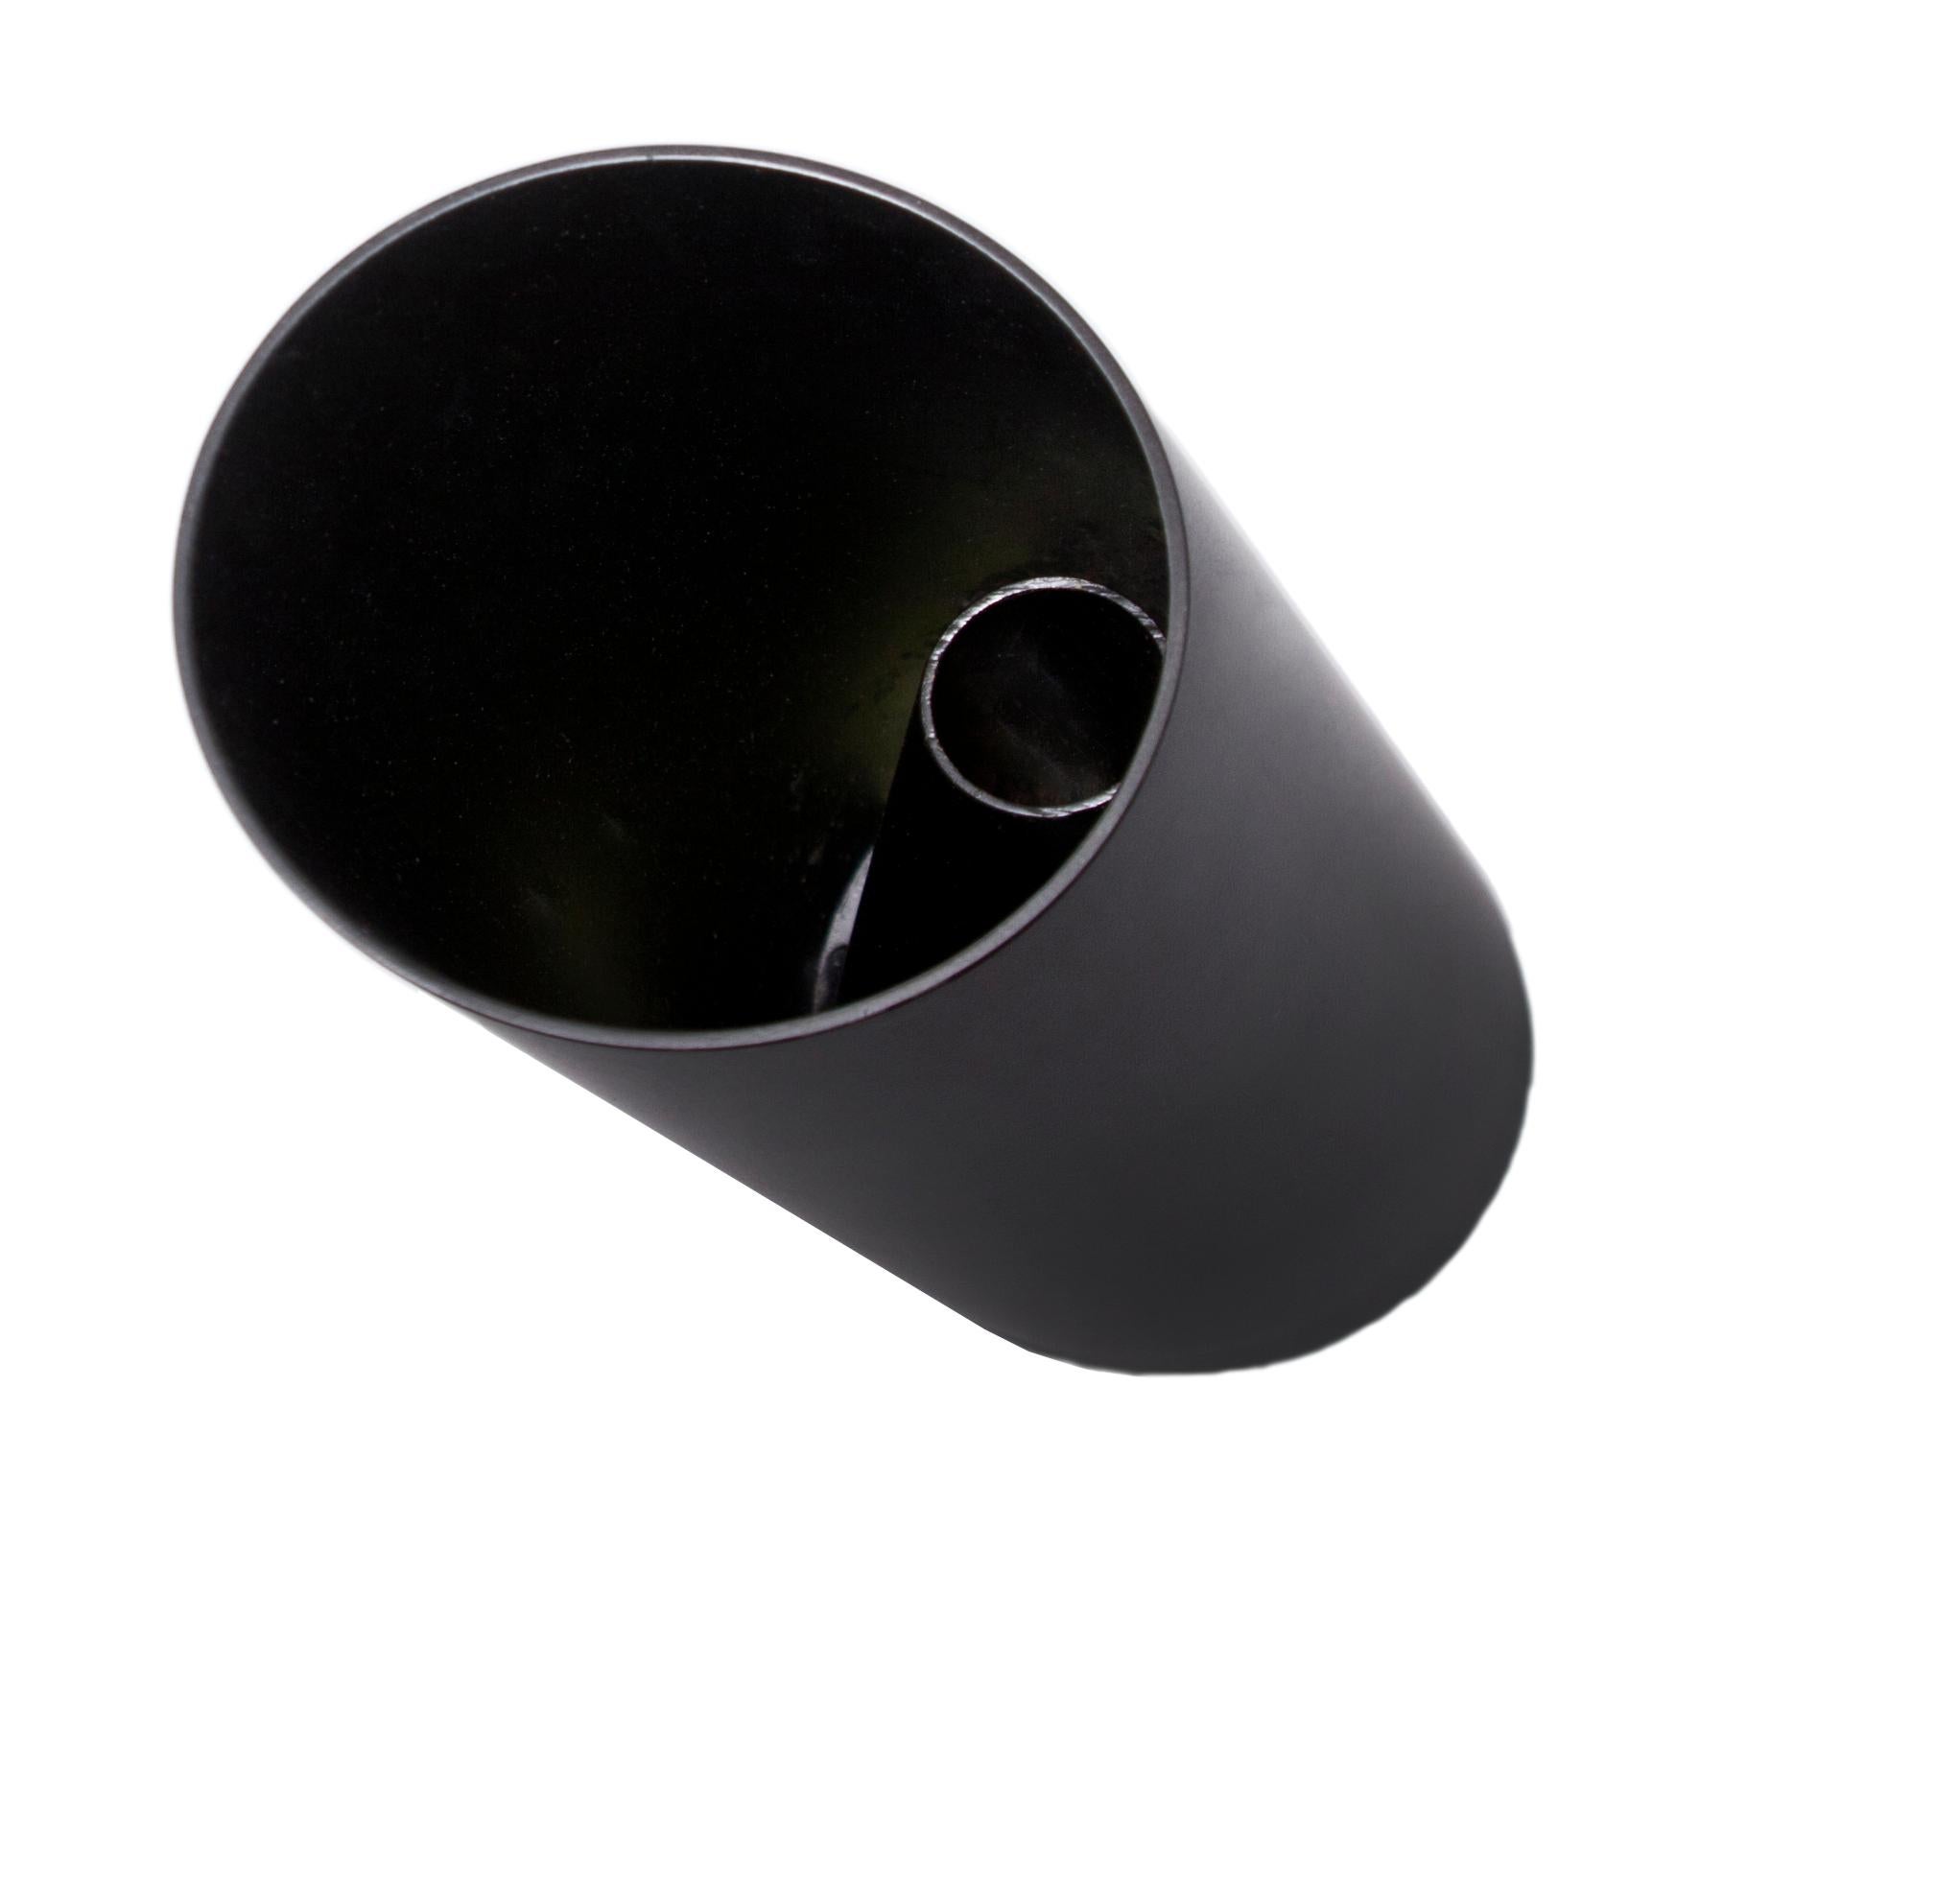 Zwei Vasen in einer, bestehend aus einer Reihe schwarzer, minimalistisch handbemalter Edelstahlrohre in verschiedenen Abmessungen und mit Schrägschnitt. Die zeitgenössische Vase Bana Double kann auf einzigartige Weise einen einzelnen Stiel bis hin